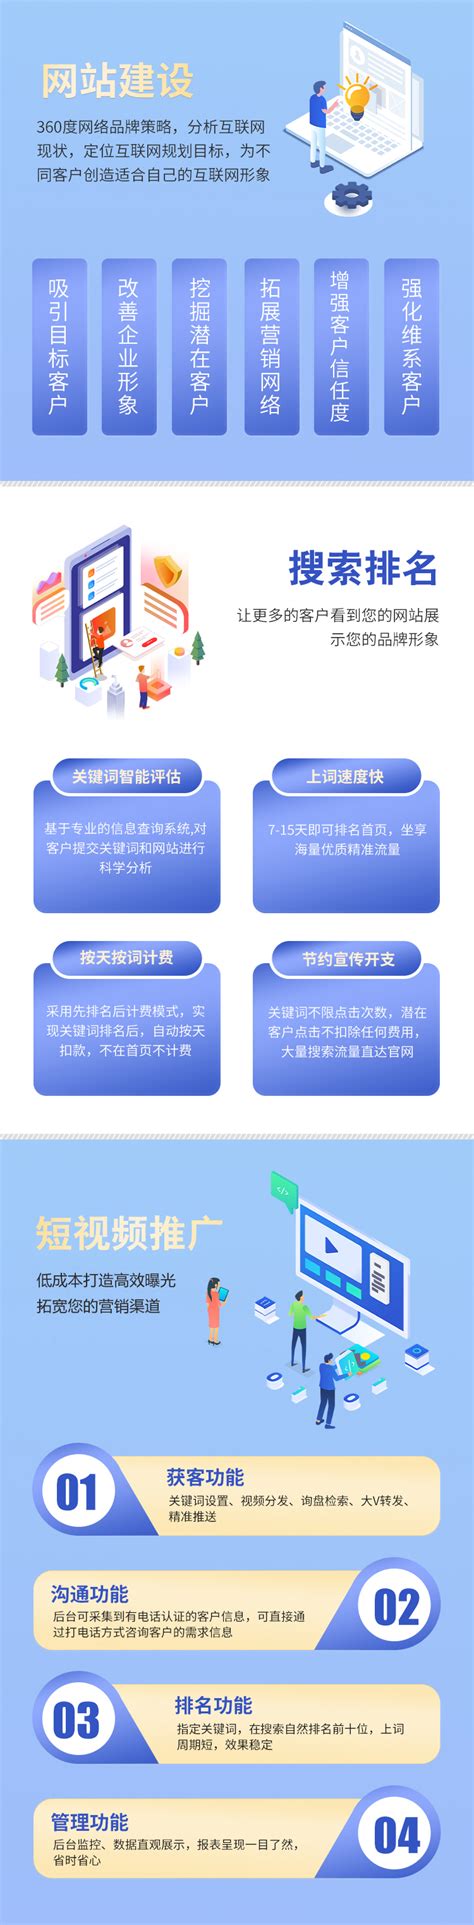 贵州网站建设完整详细流程图